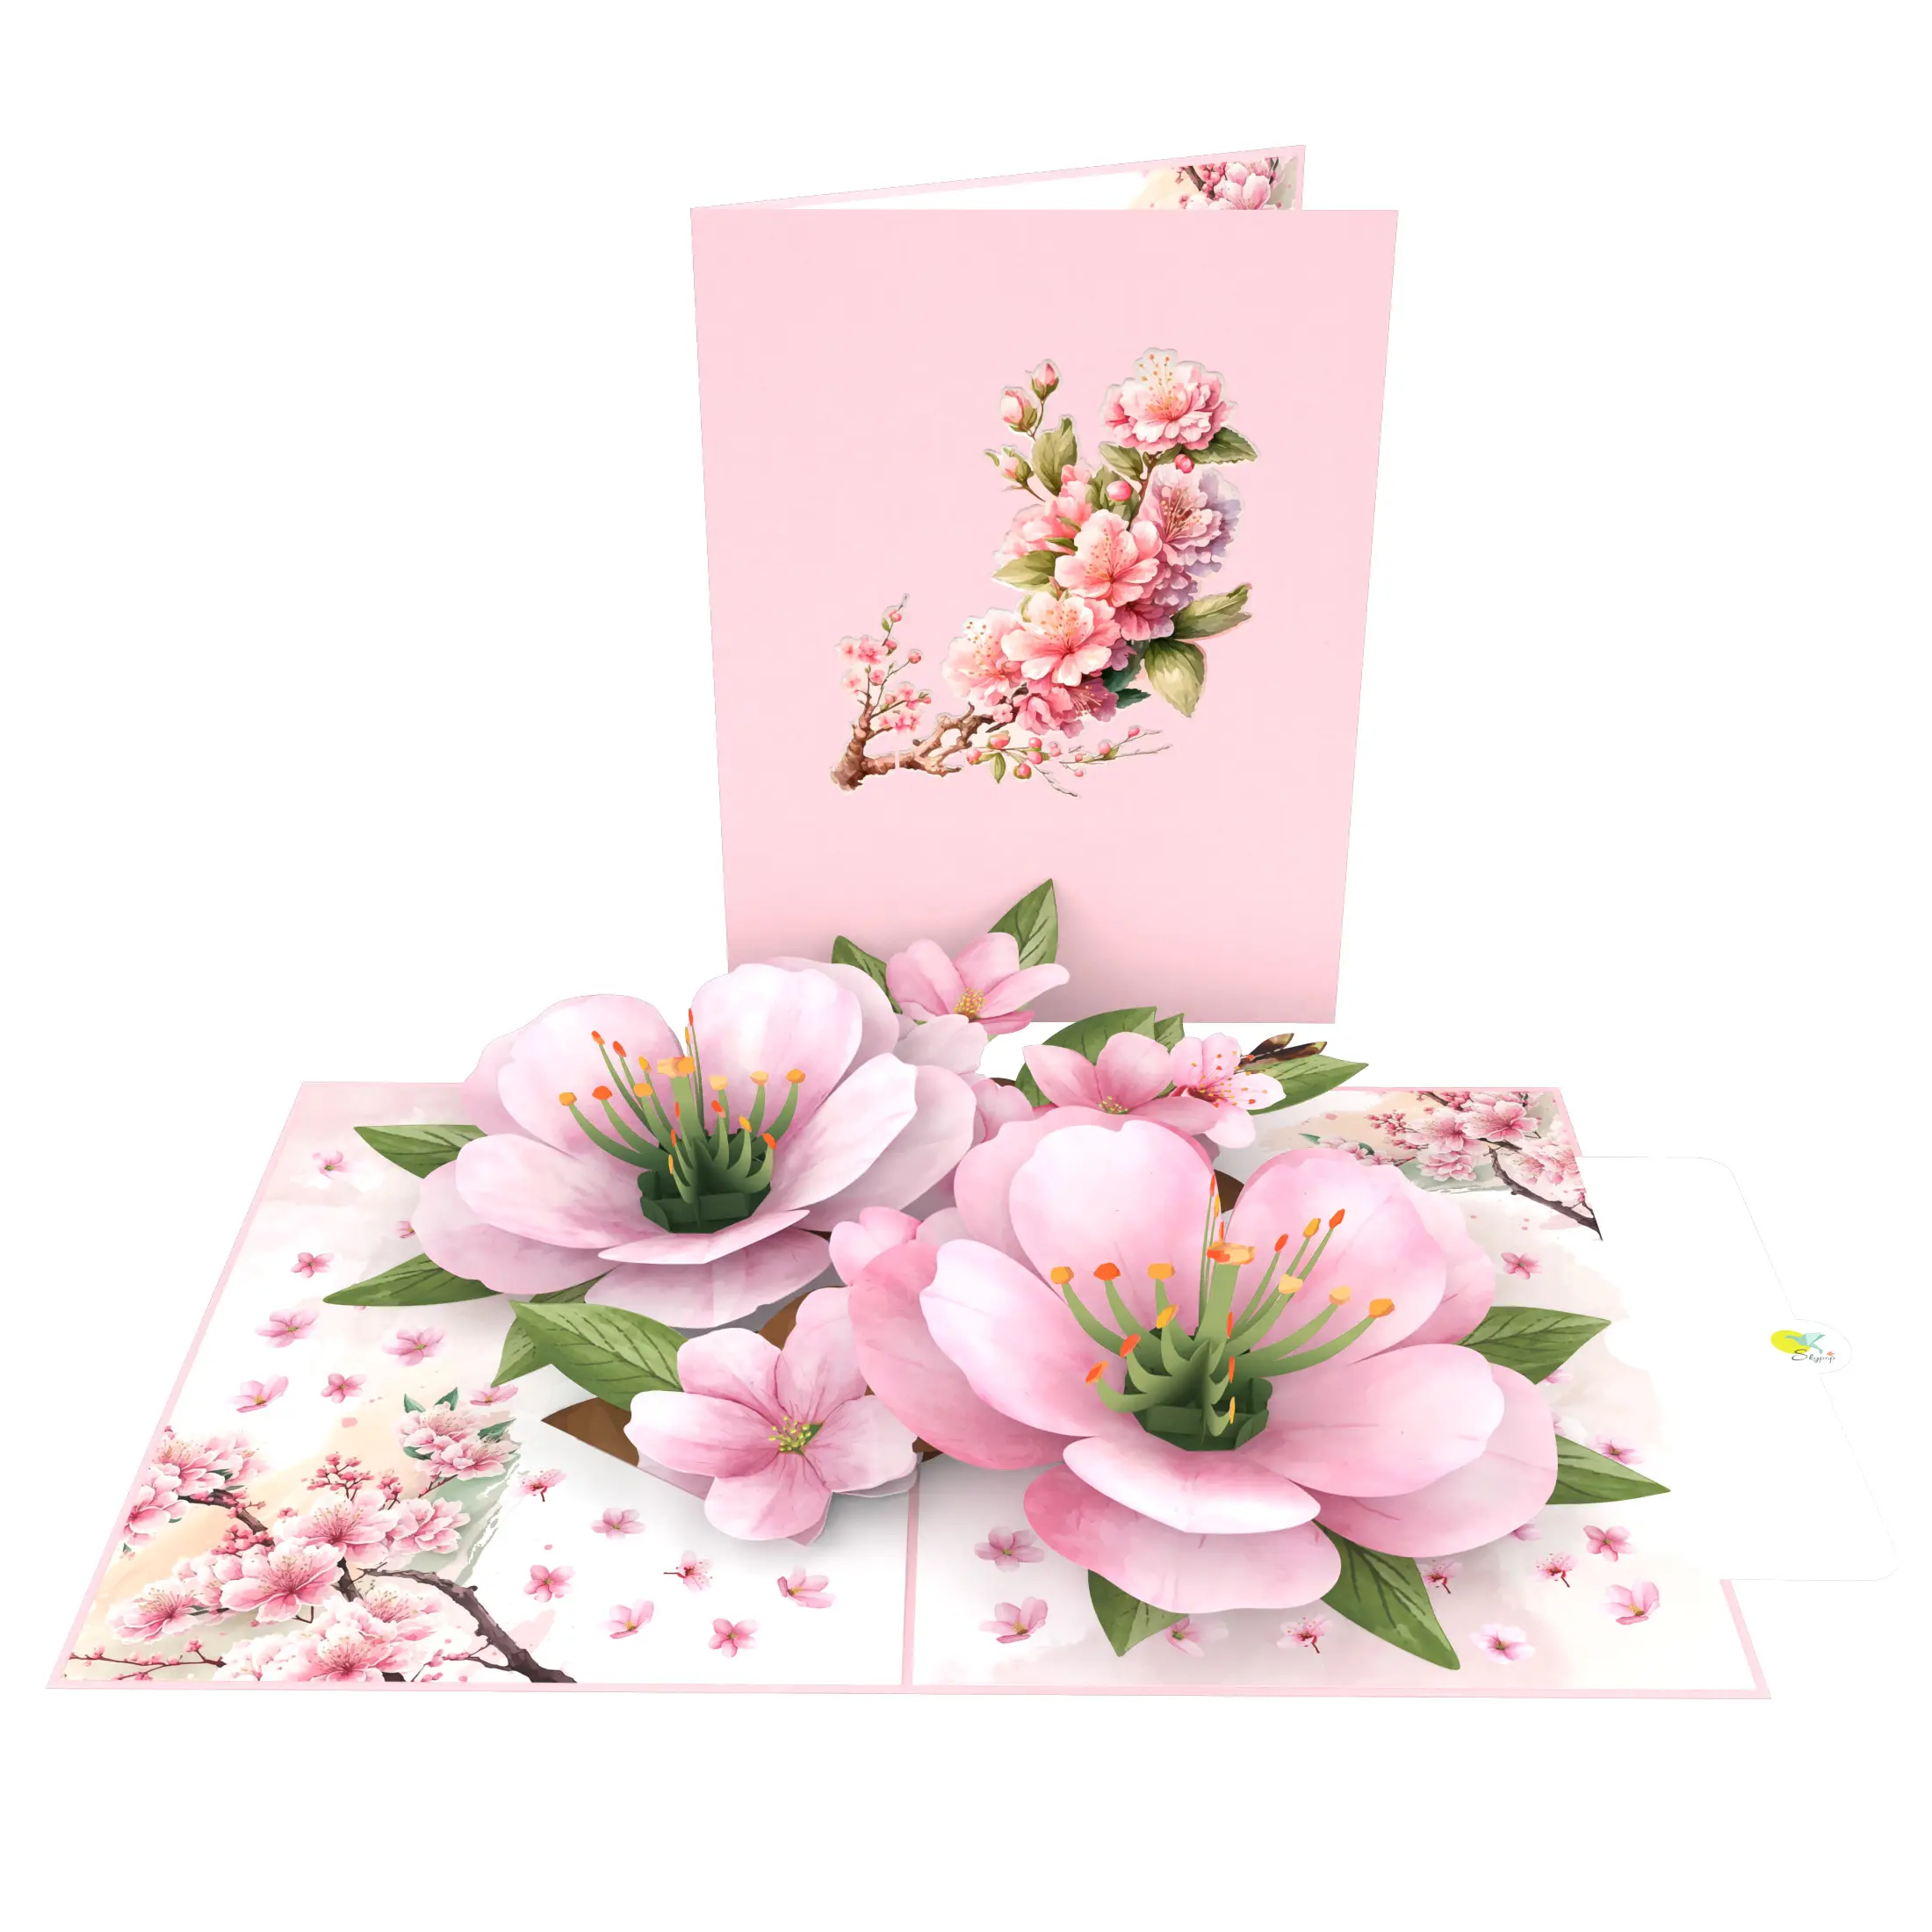 Cartão pop-up 3D para jardim de flores de cerejeira, cartão com significado para aniversário, aniversário, papel artesanal, corte a laser, popularidade de venda